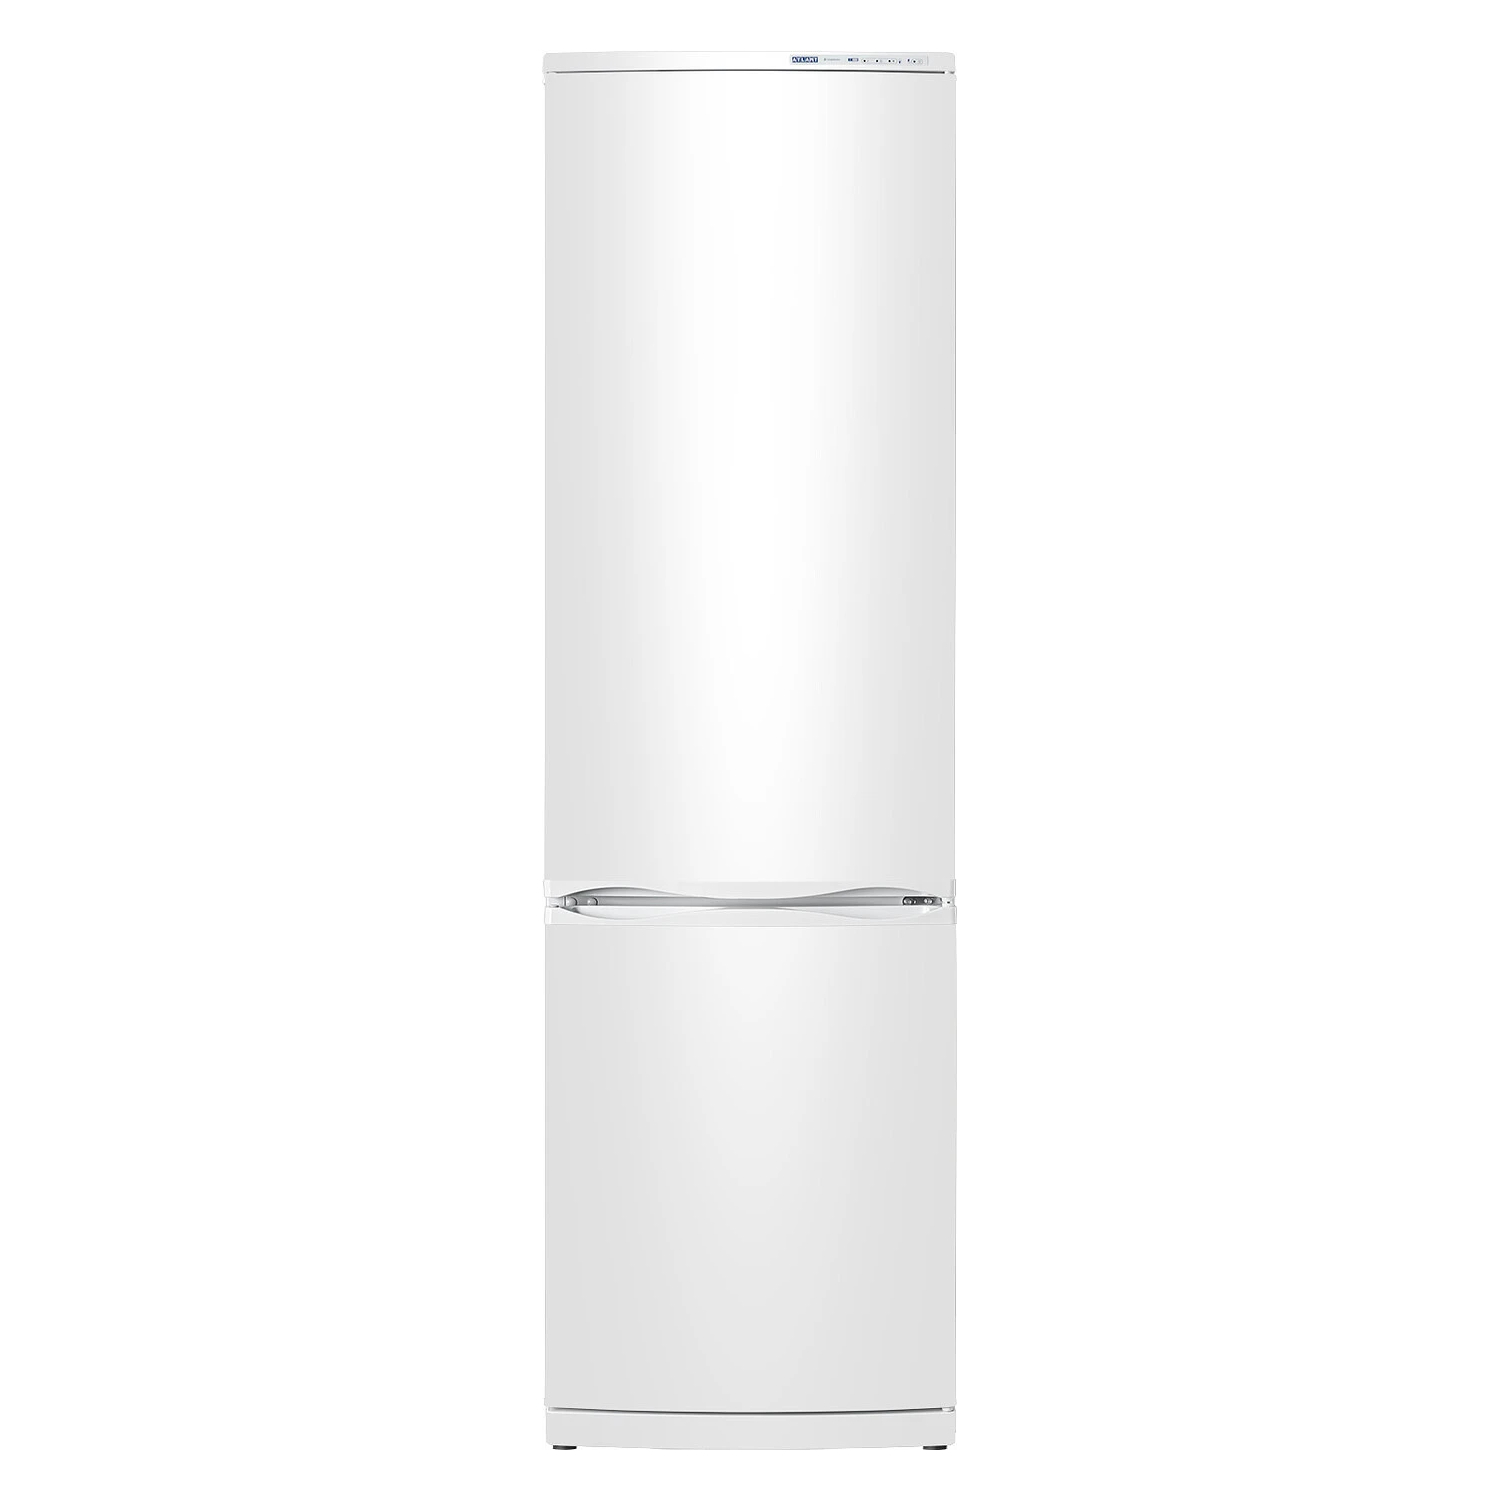 Холодильник Атлант XM-6026-031 белый холодильник орск 173 b двухкамерный класс а 320 л белый